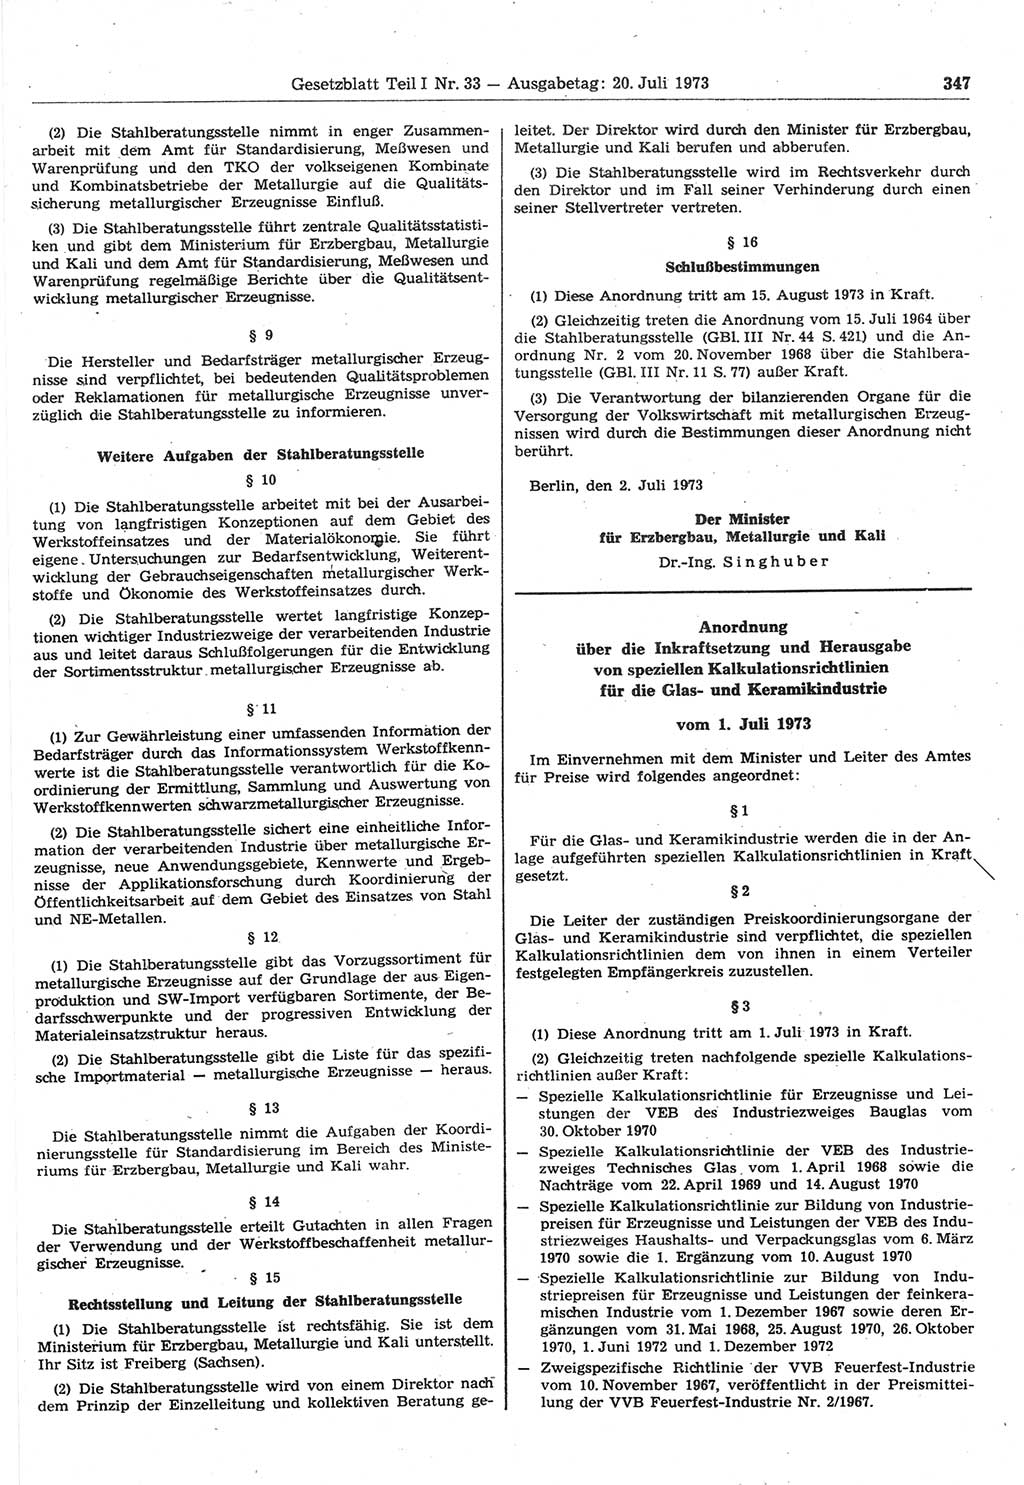 Gesetzblatt (GBl.) der Deutschen Demokratischen Republik (DDR) Teil Ⅰ 1973, Seite 347 (GBl. DDR Ⅰ 1973, S. 347)